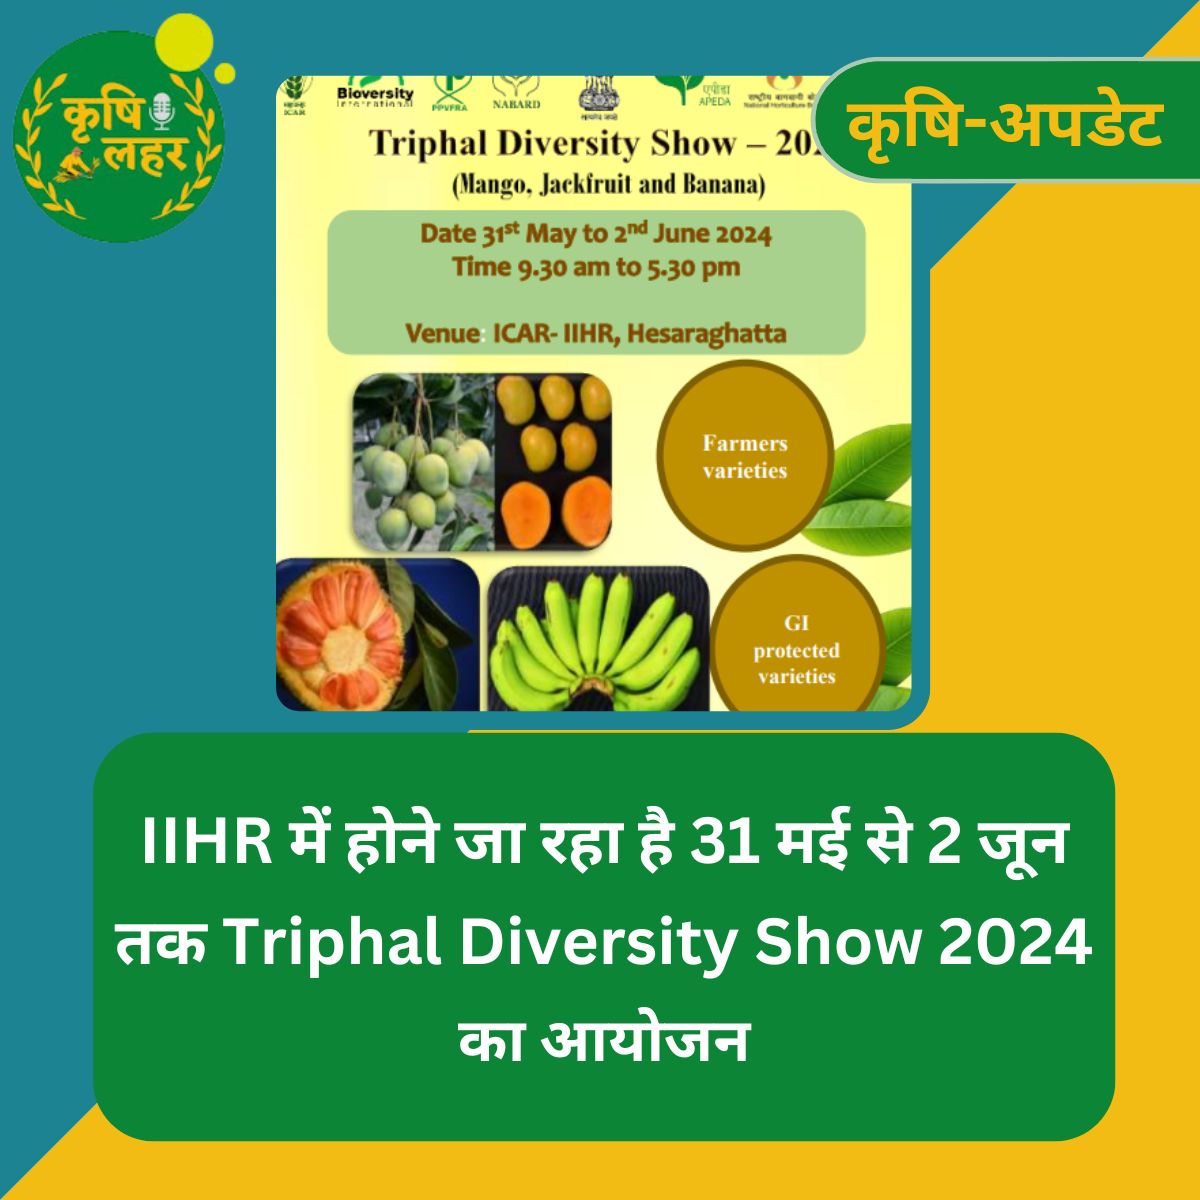 बेंगलुरु के हेसरघट्टा में @ICAR_IIHR में 31 मई से 2 जून 2024 तक Triphal Diversity show होने जा रहा है। इस event में आम, कटहल और केले की कई varieties के फल और पौधों की बिक्री से लेकर इन फलों से बनने वाले उत्पादों की प्रदर्शनी लगेगी। #KrishiLahar #AgriUpdate #Farming #ICAR